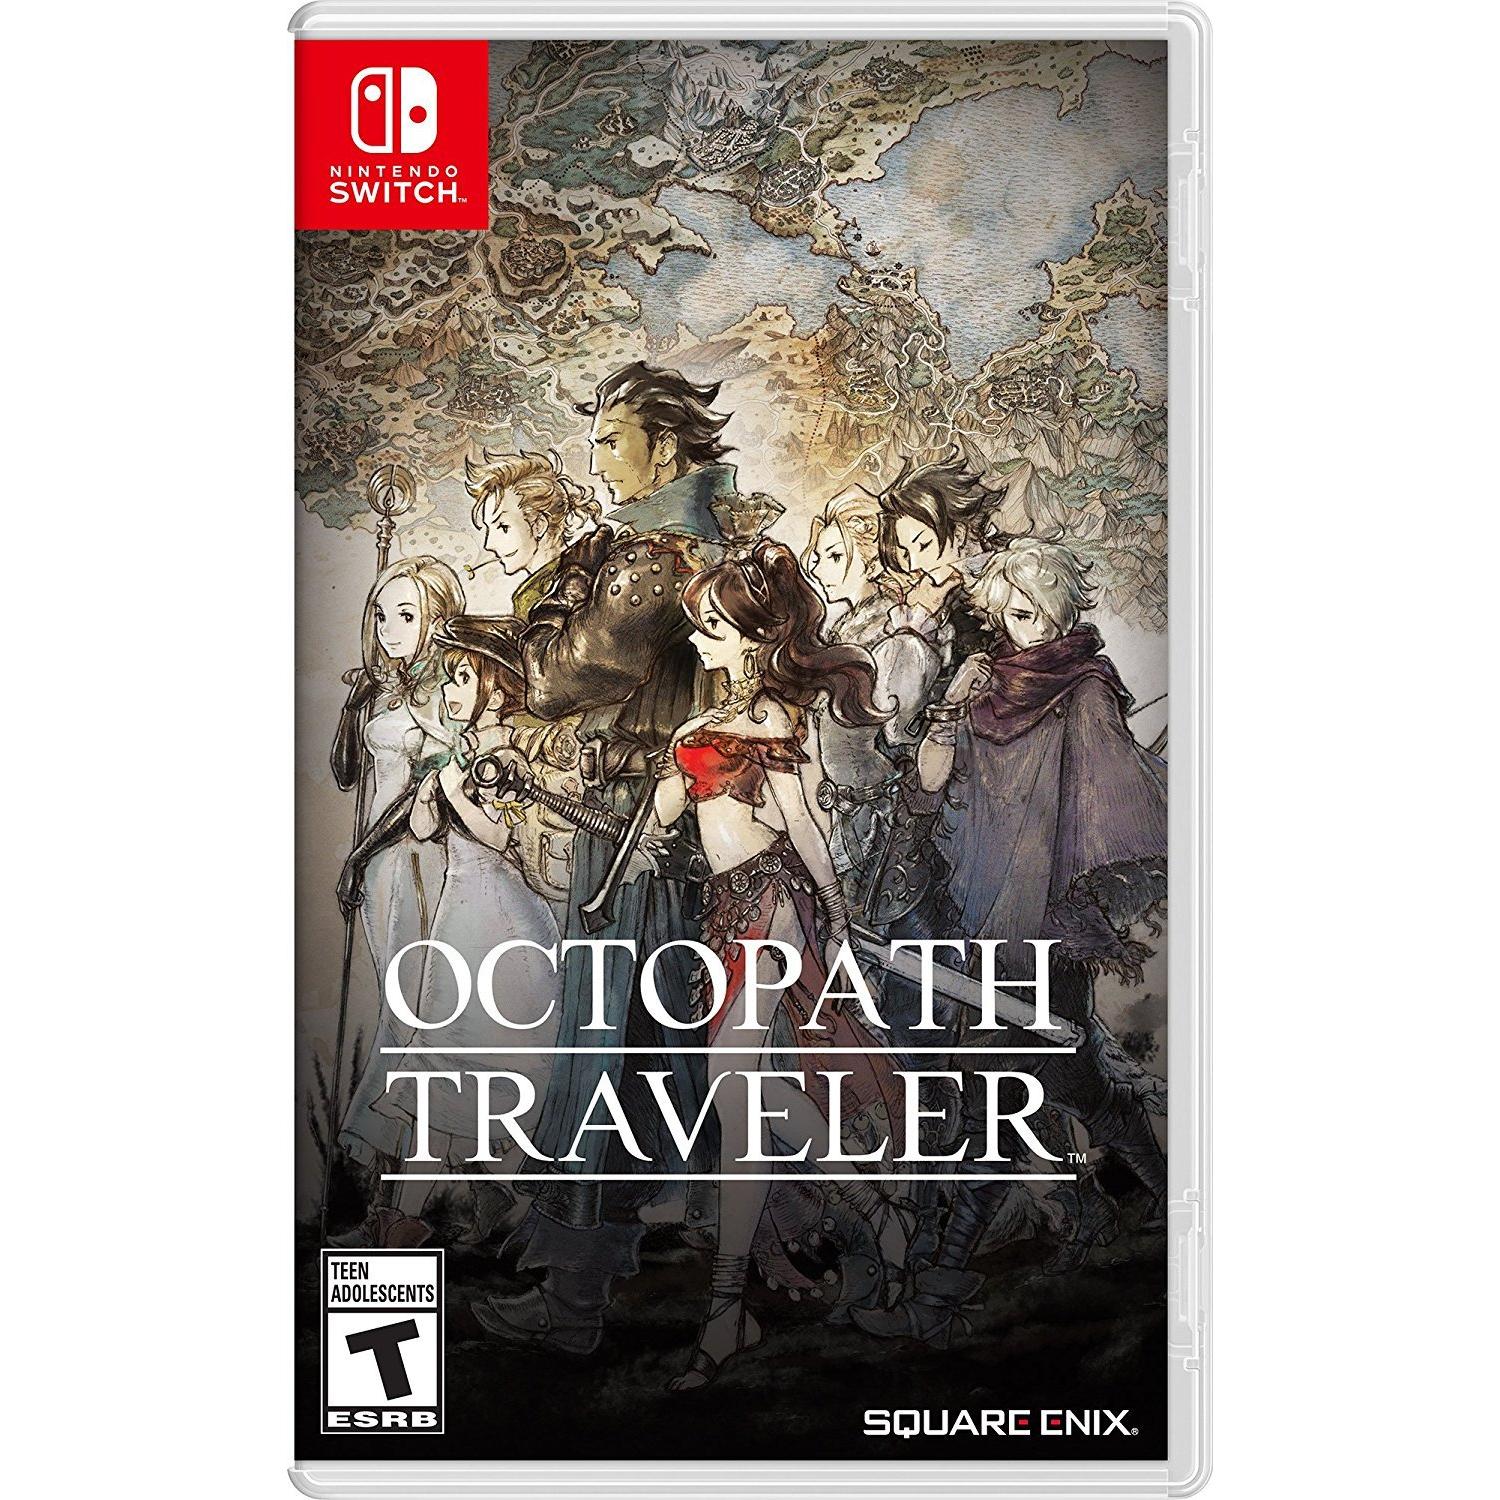 Nintendo - Octopath Traveler